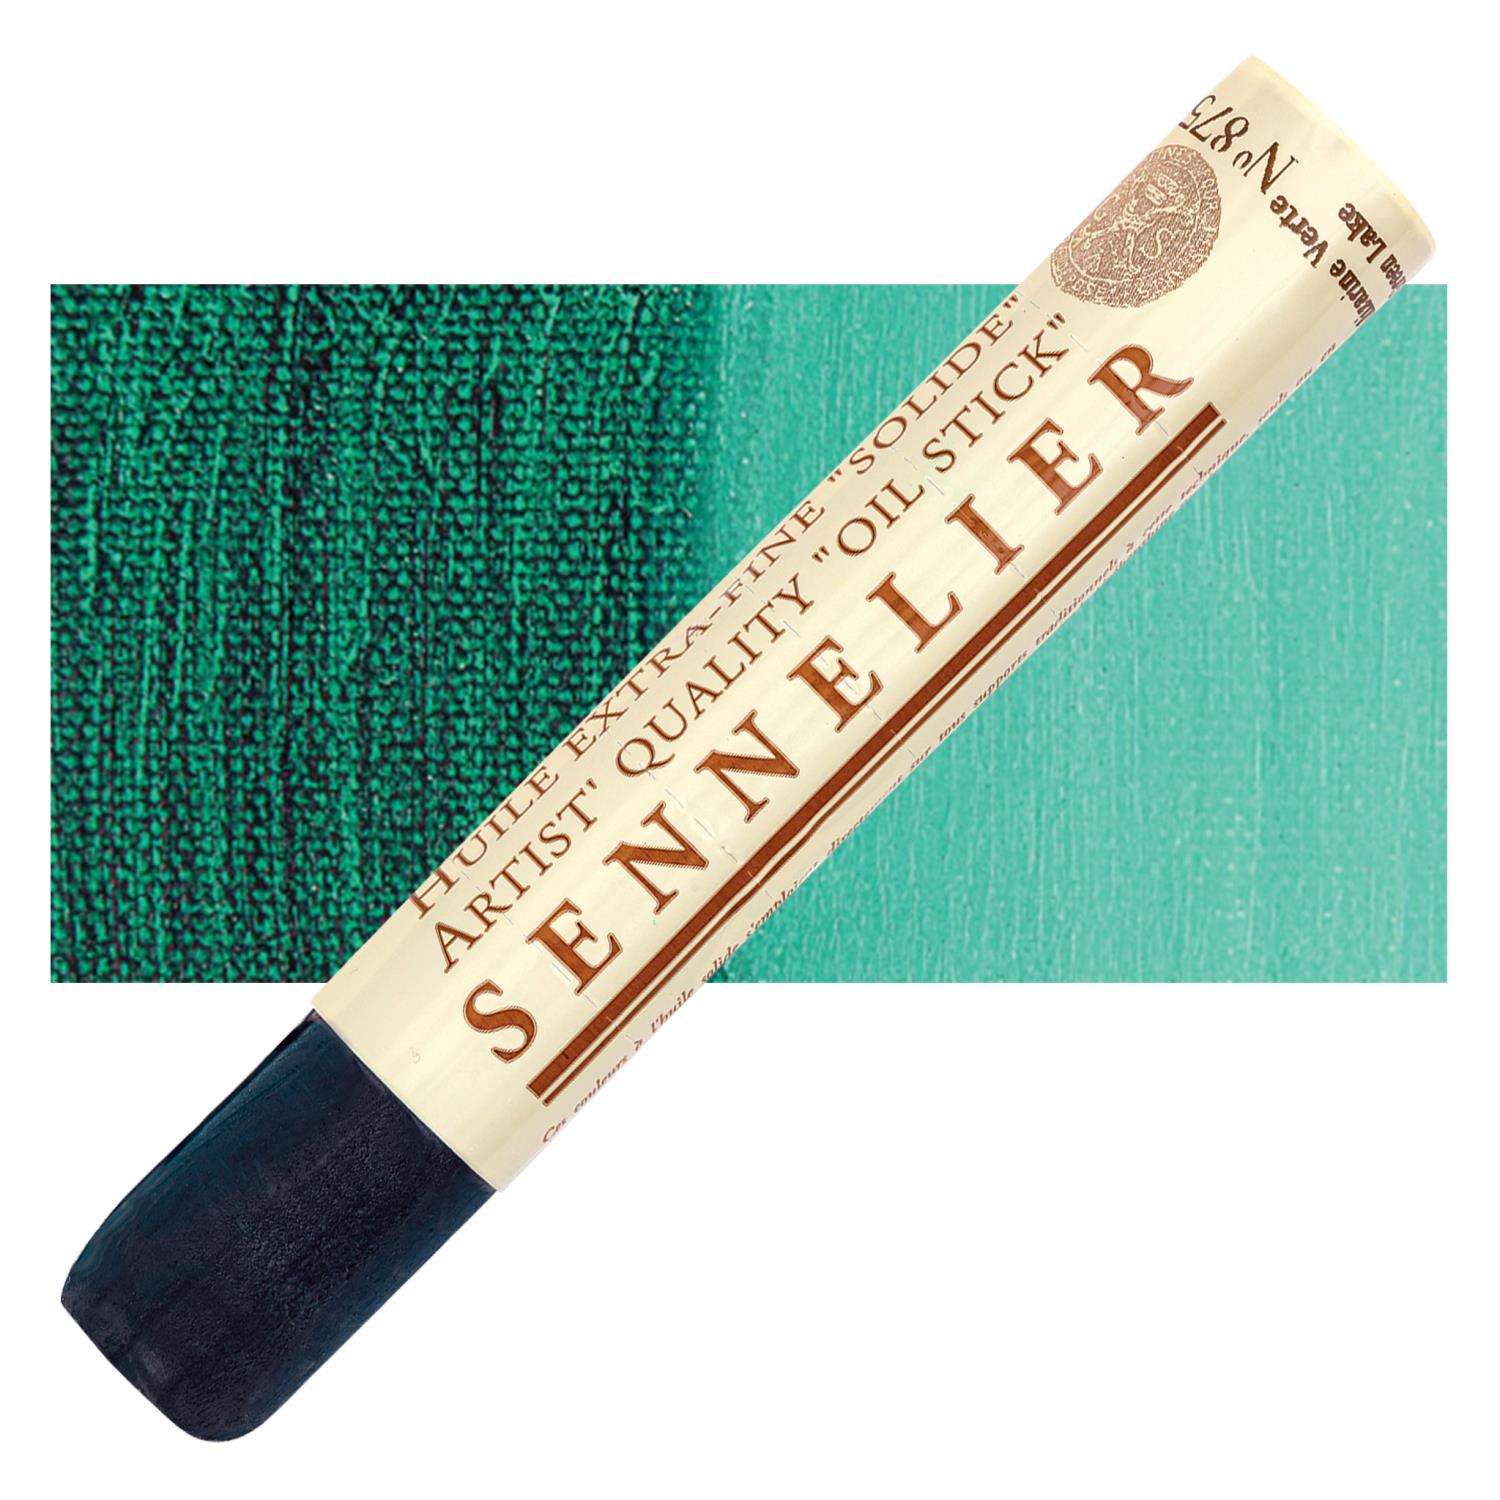 Sennelier Artist Oil Stick 38ml - 875 Green Alizarin Lake S2 utgår